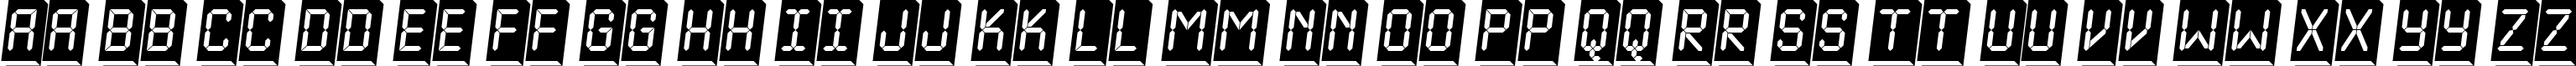 Пример написания английского алфавита шрифтом a_LCDNova3DPlObl